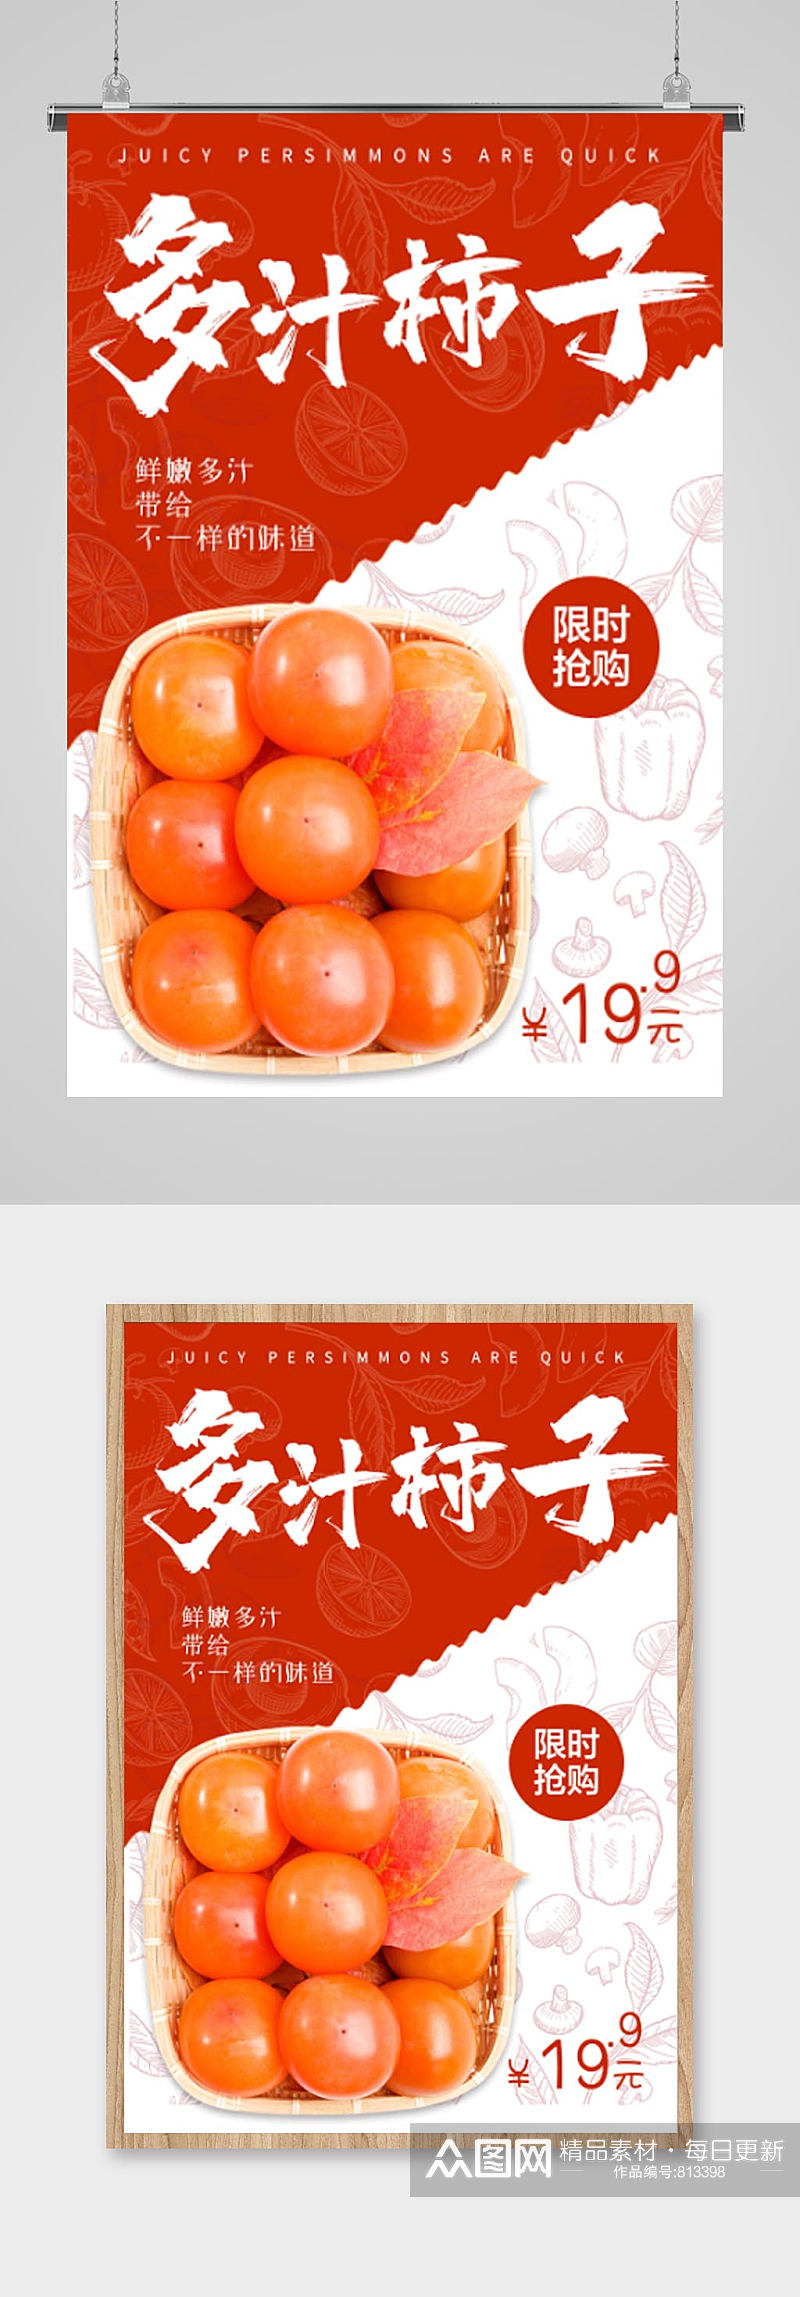 柿子橙色底纹产品价格海报素材